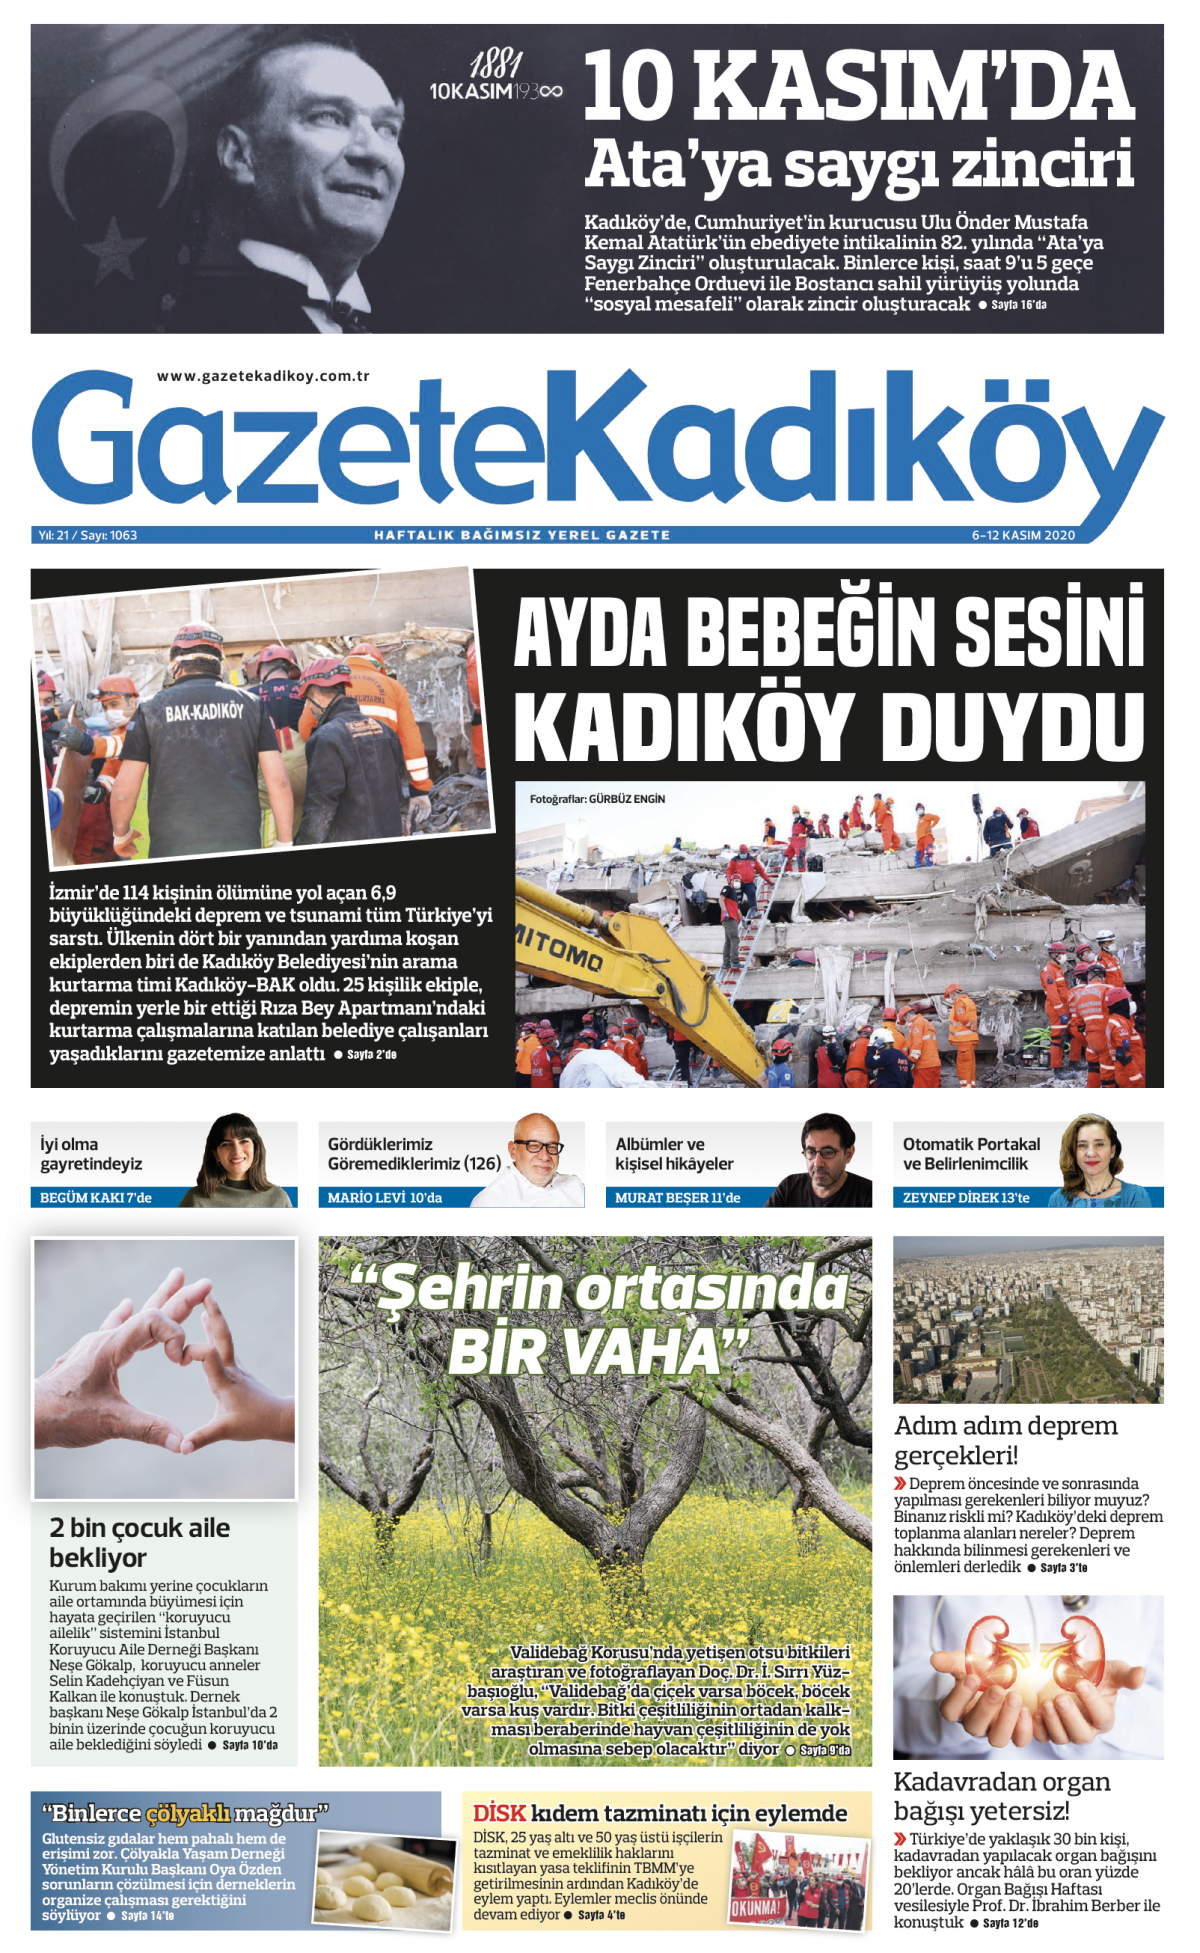 Gazete Kadıköy - 1063.Sayı